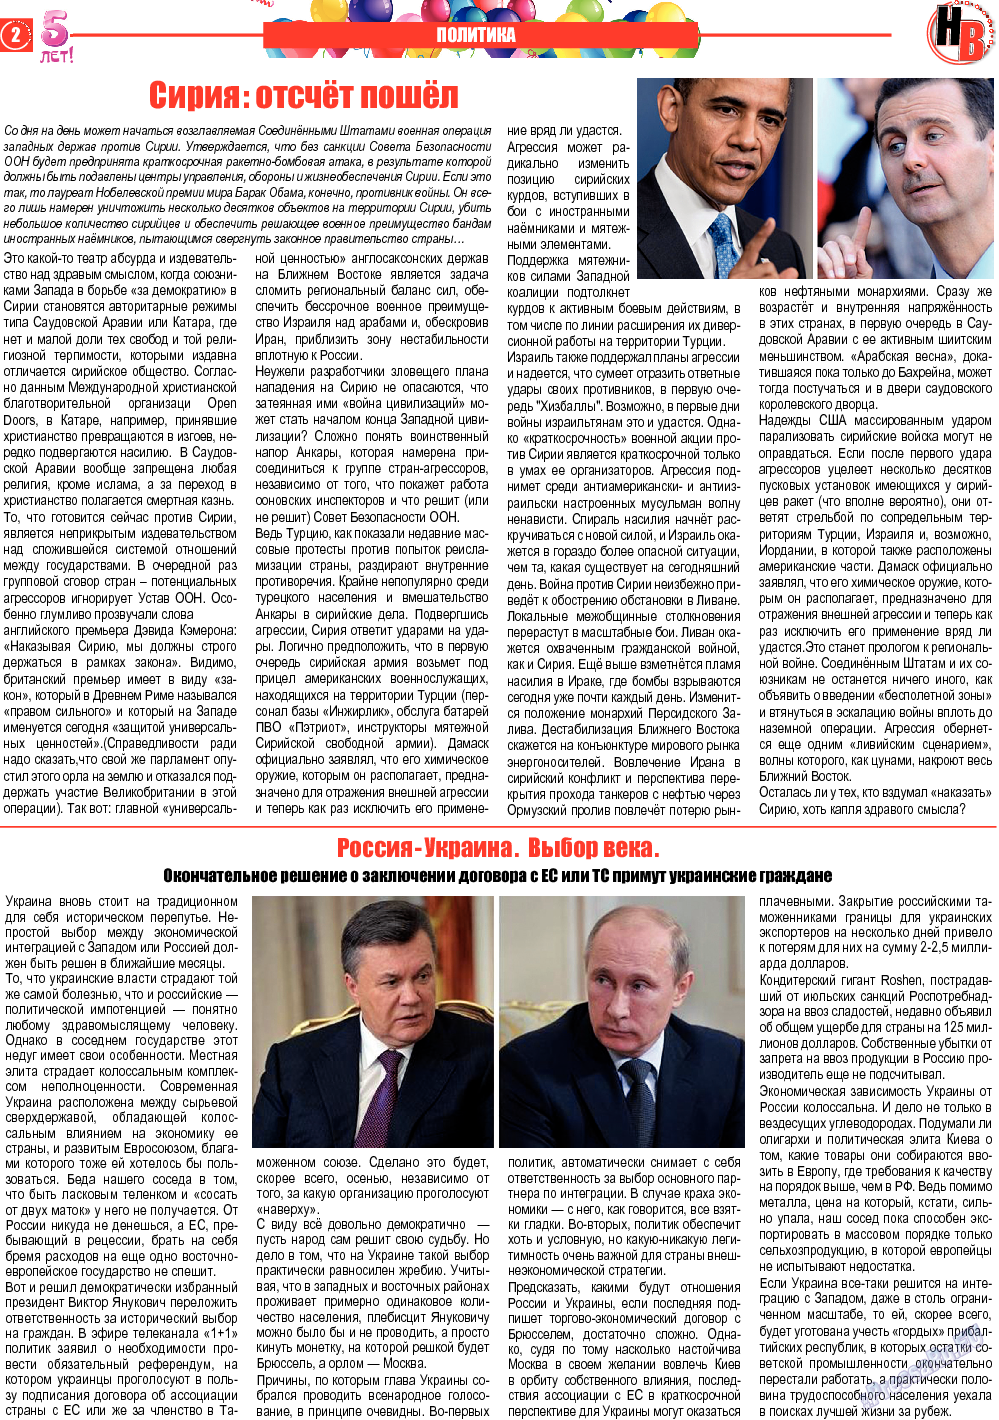 Наше время, газета. 2013 №9 стр.2